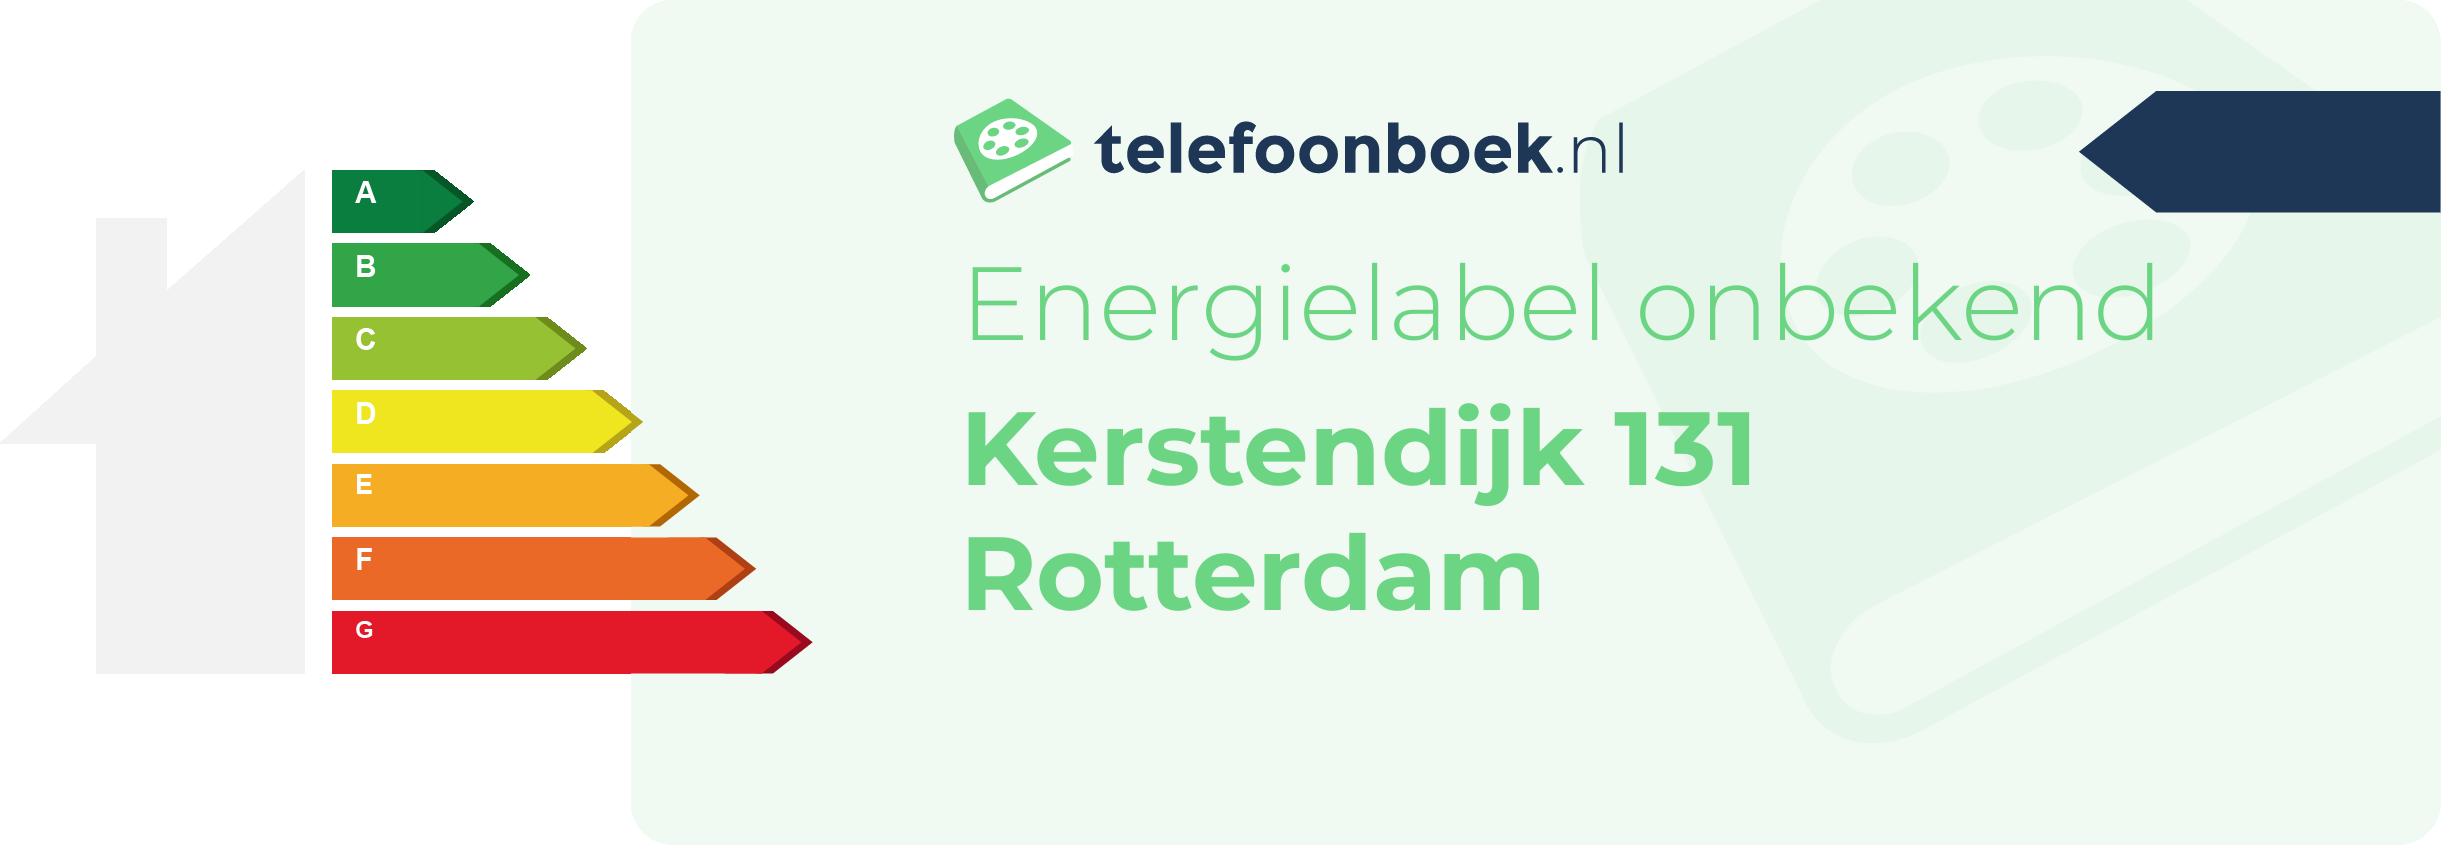 Energielabel Kerstendijk 131 Rotterdam